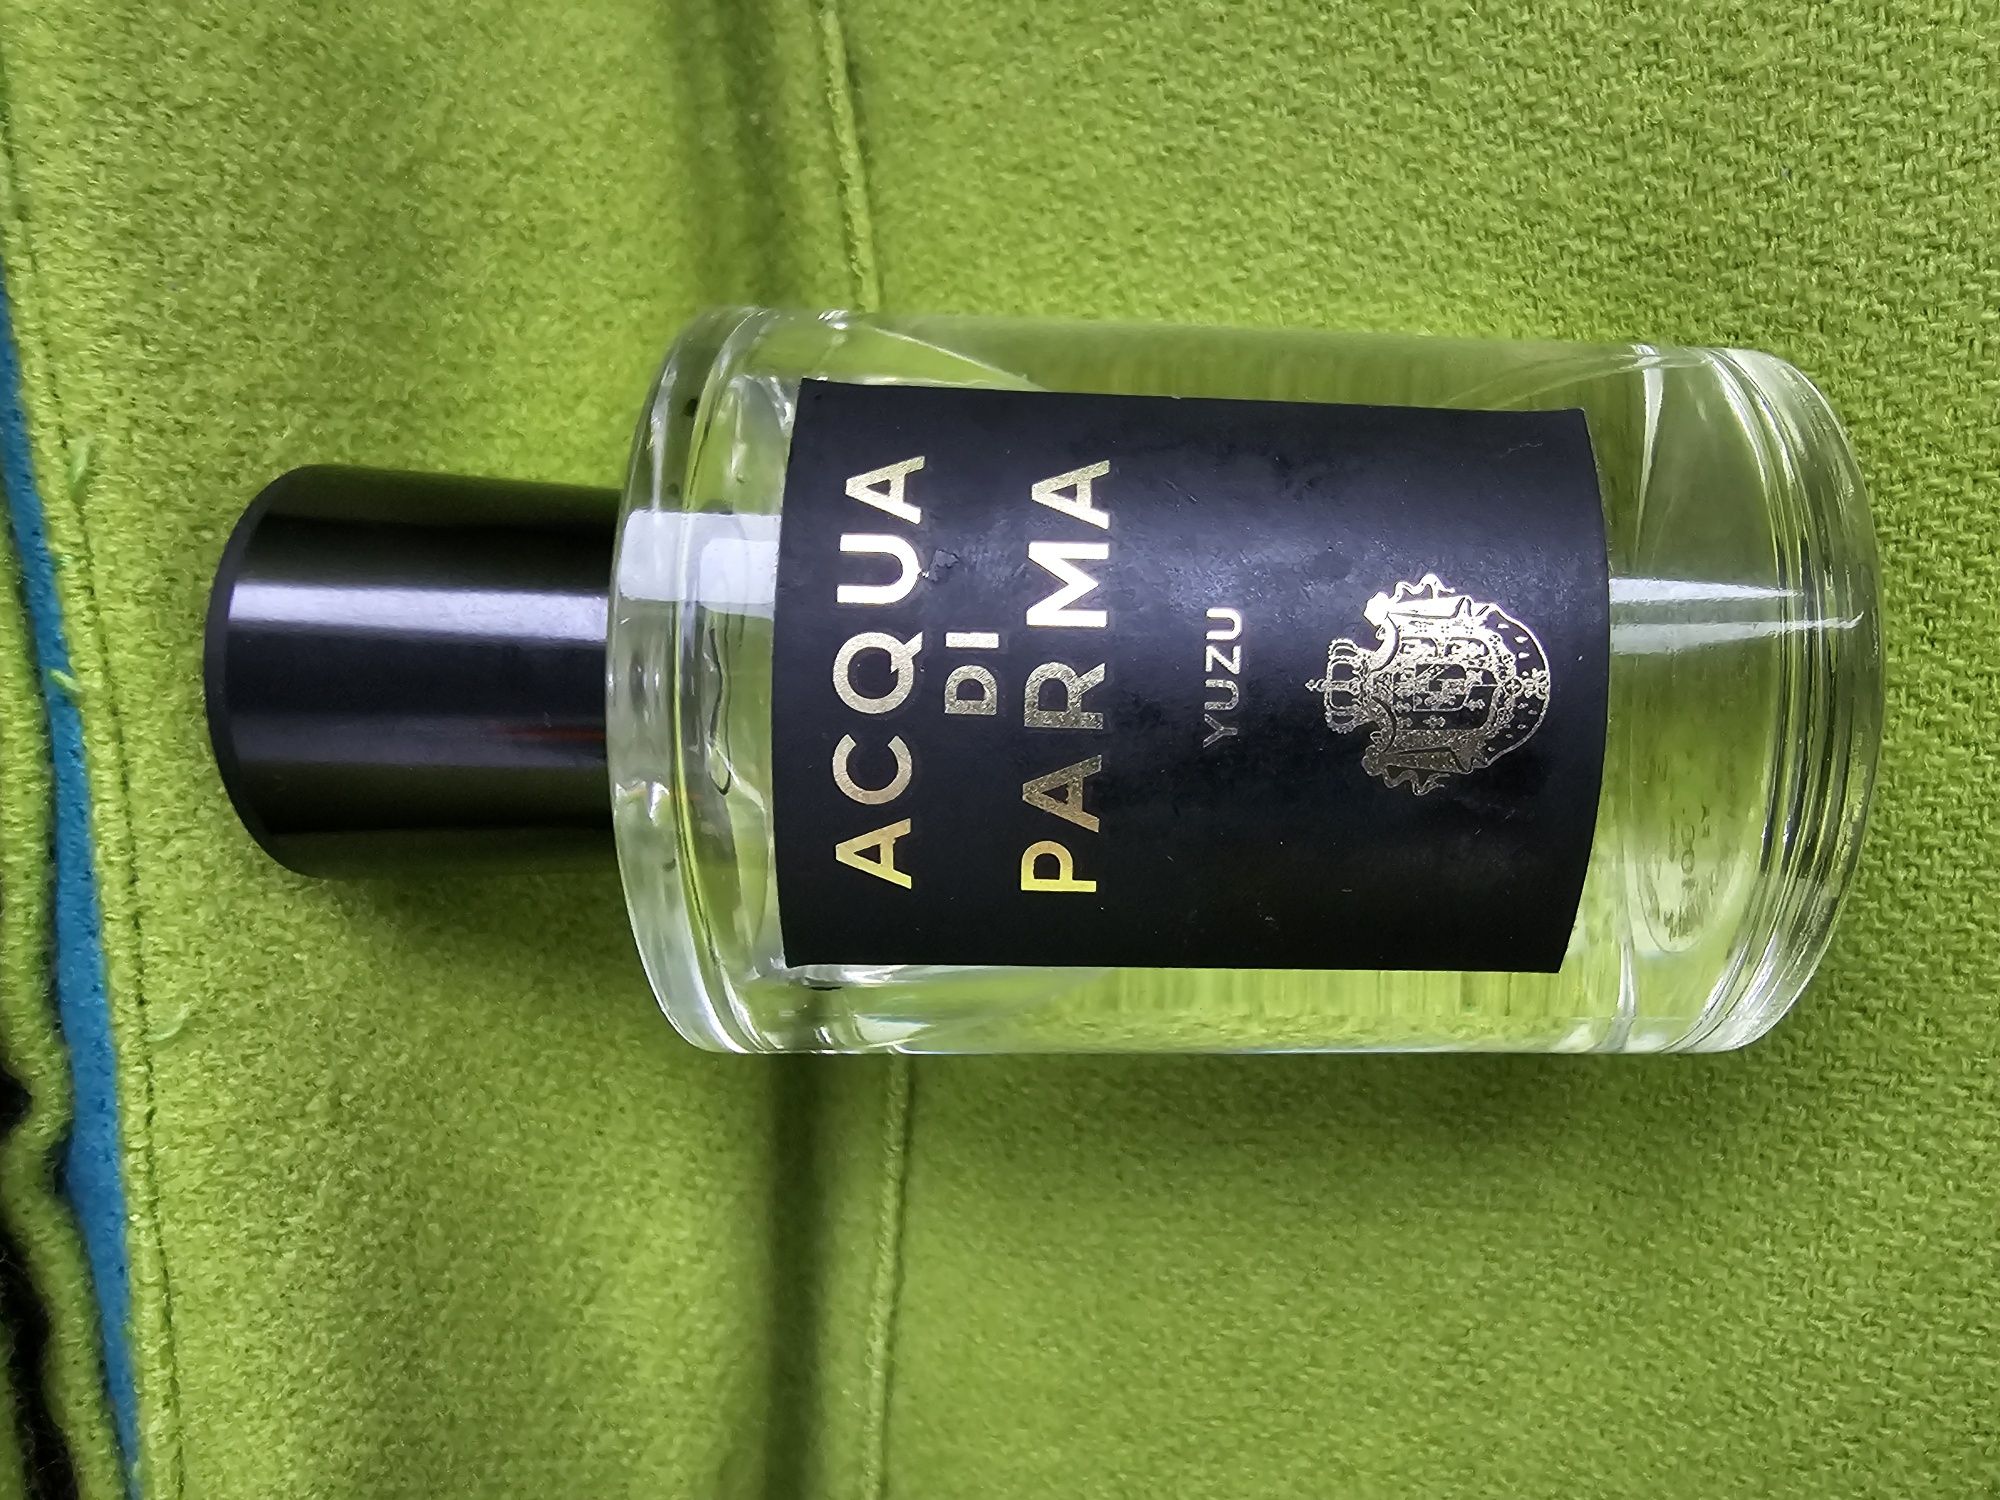 Parfum ACQUA di PARMA yuzu / ORIGINAL UK / preț fix 
DI
PARMA
YUZU